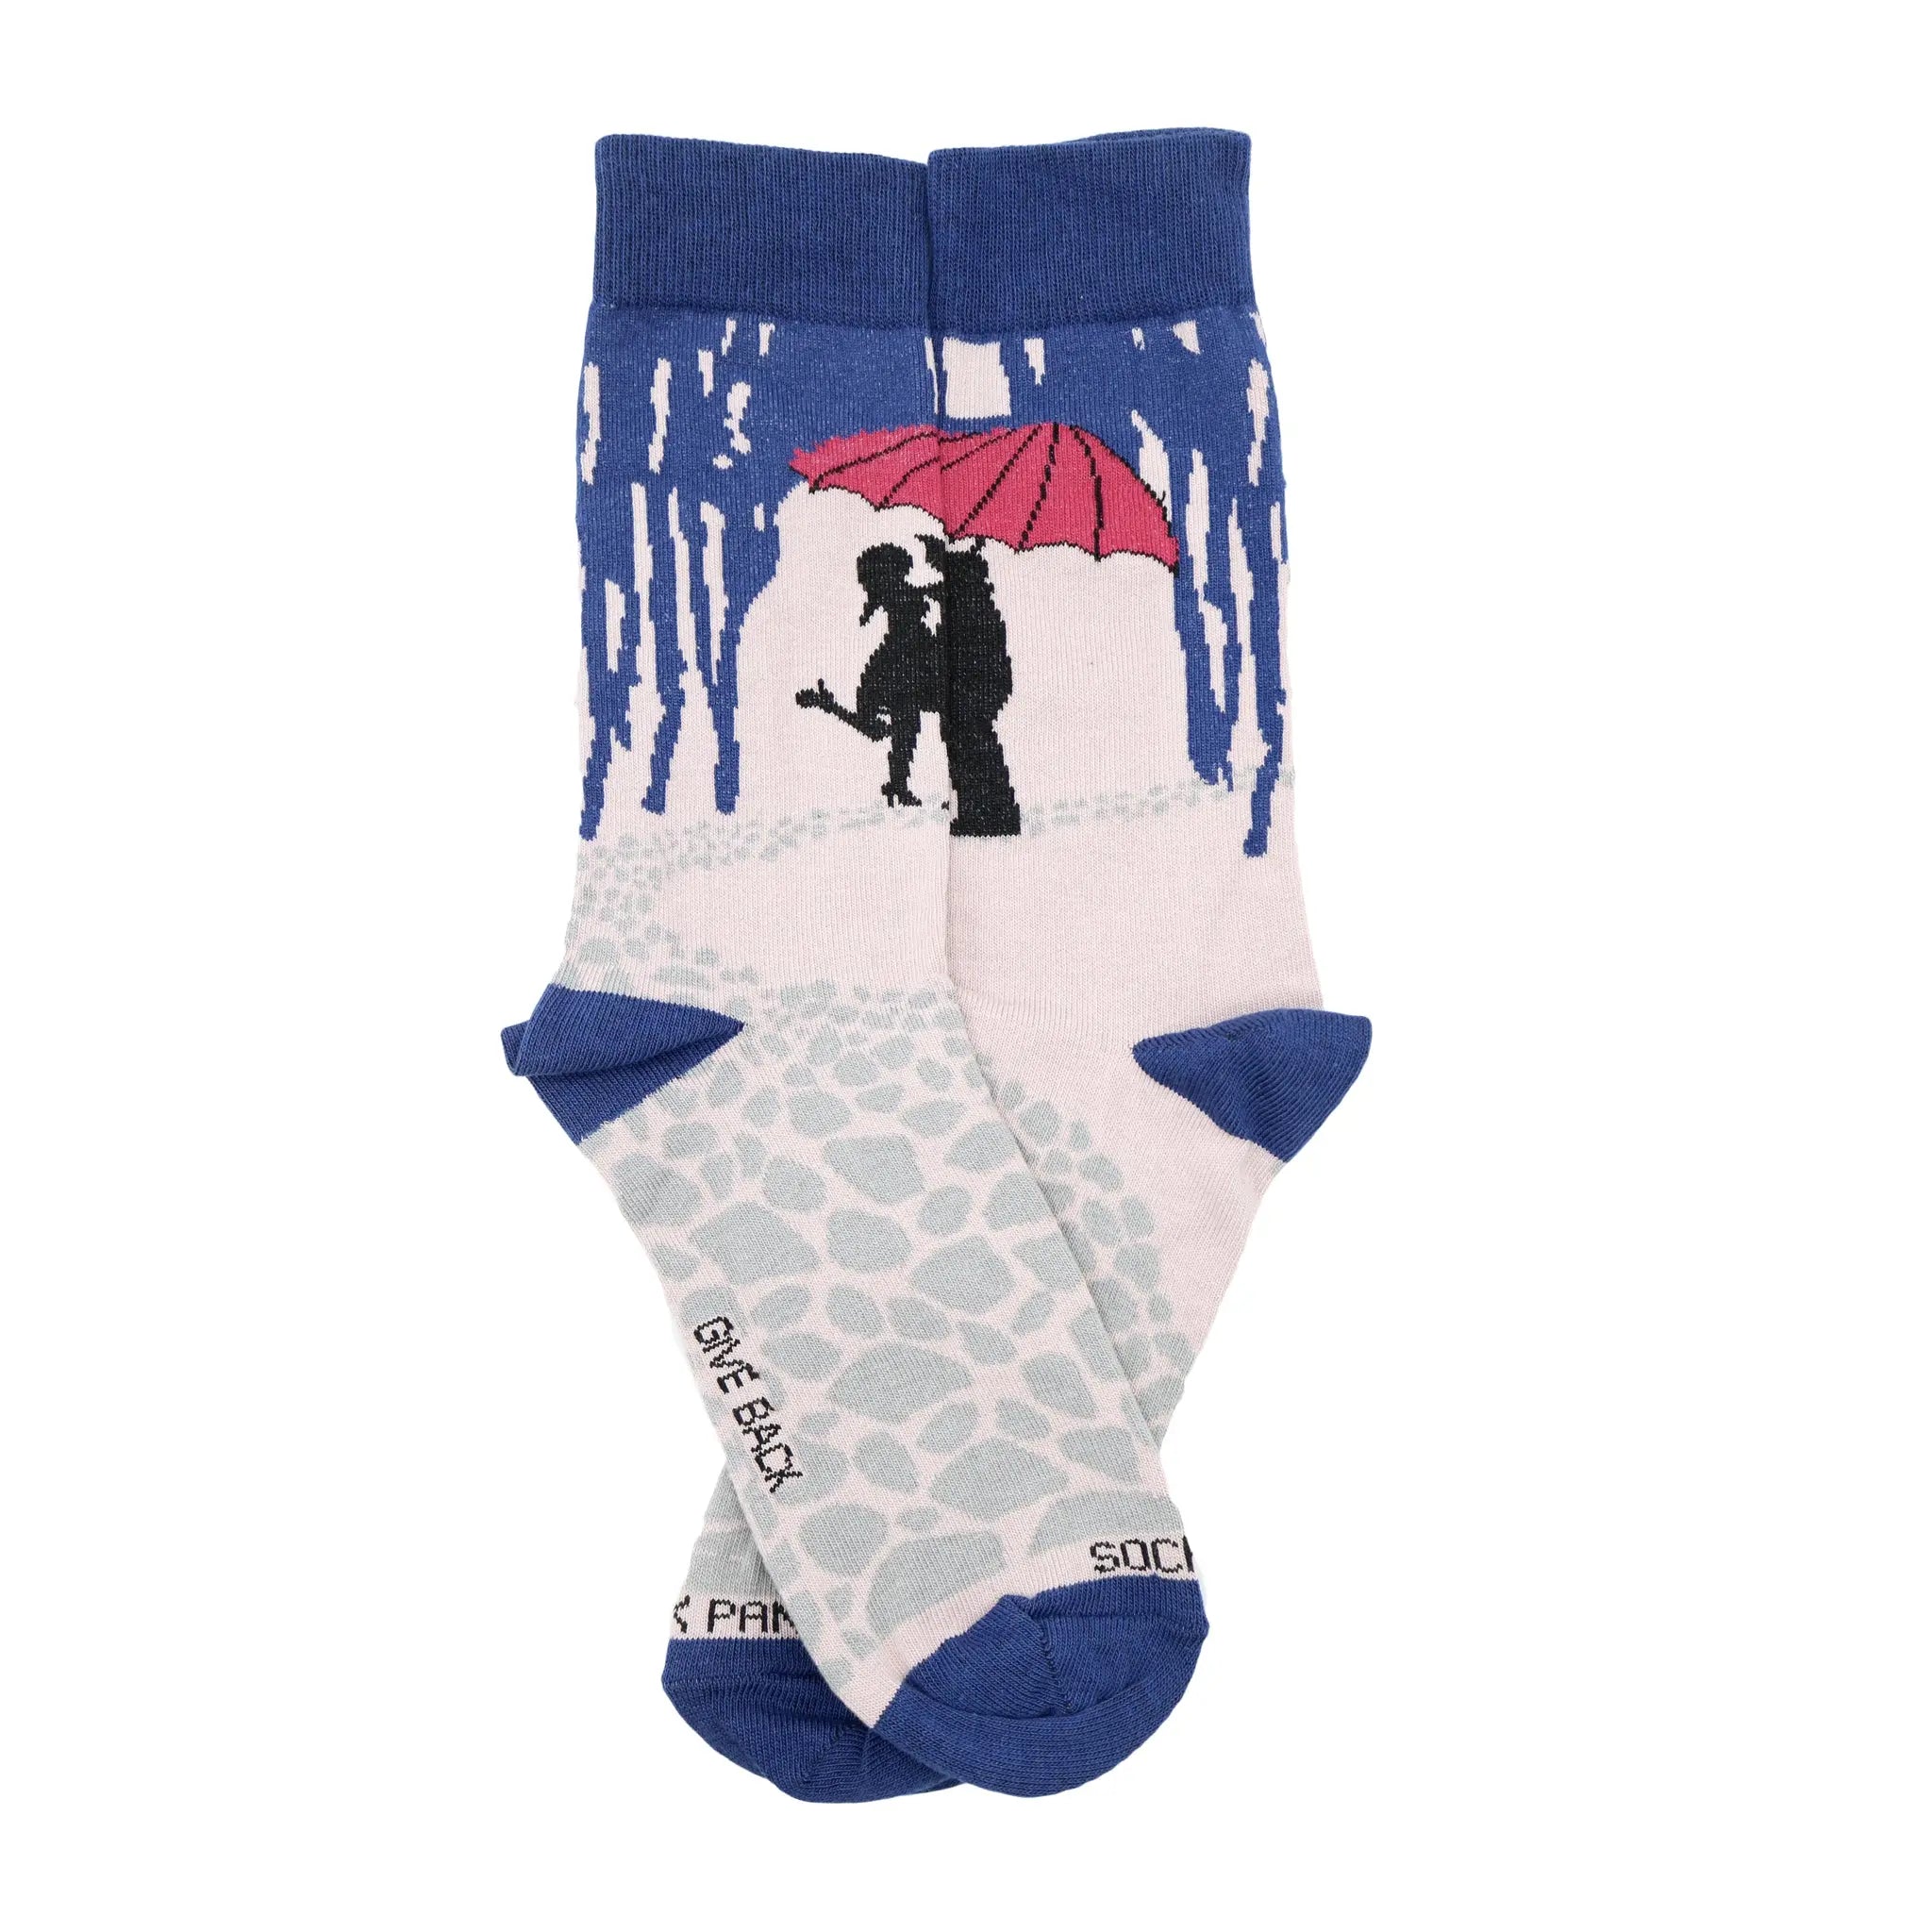 Kissing in the Rain Socks from the Sock Panda (Adult Medium)